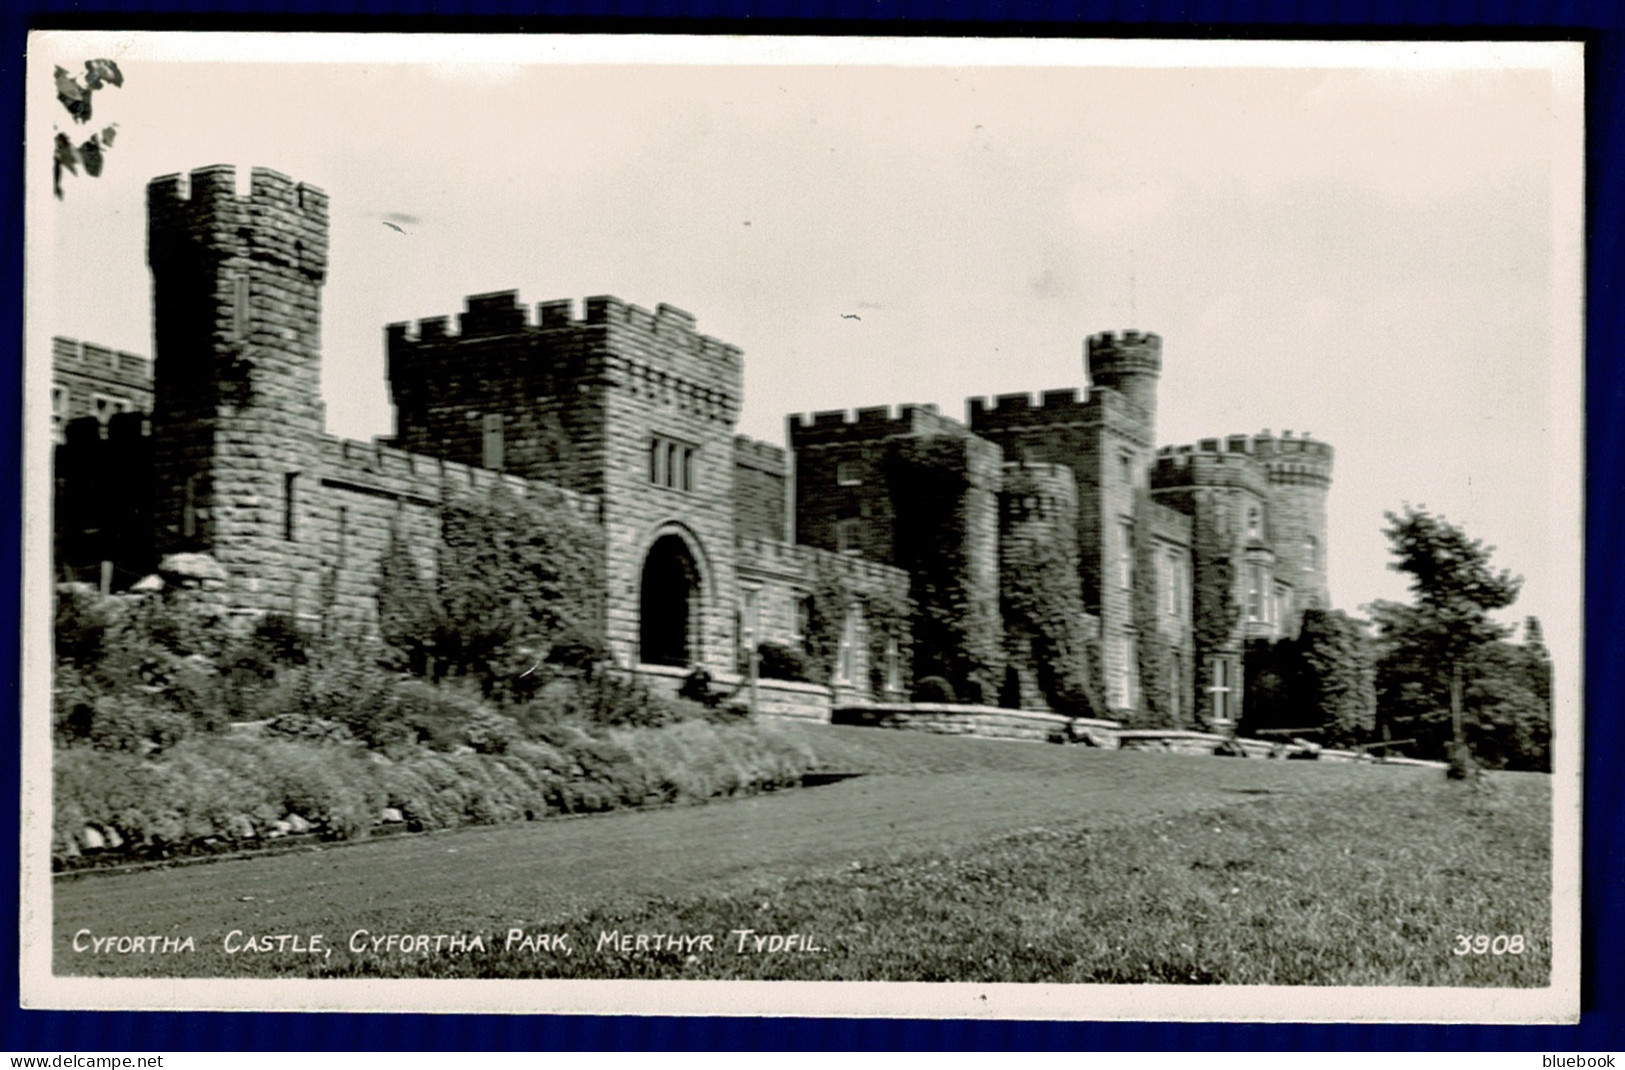 Ref 1603 - Real Photo Postcard Cyfortha (sic) Cyfartha Castle MerthyrTydfil Glamorgan Wales - Glamorgan